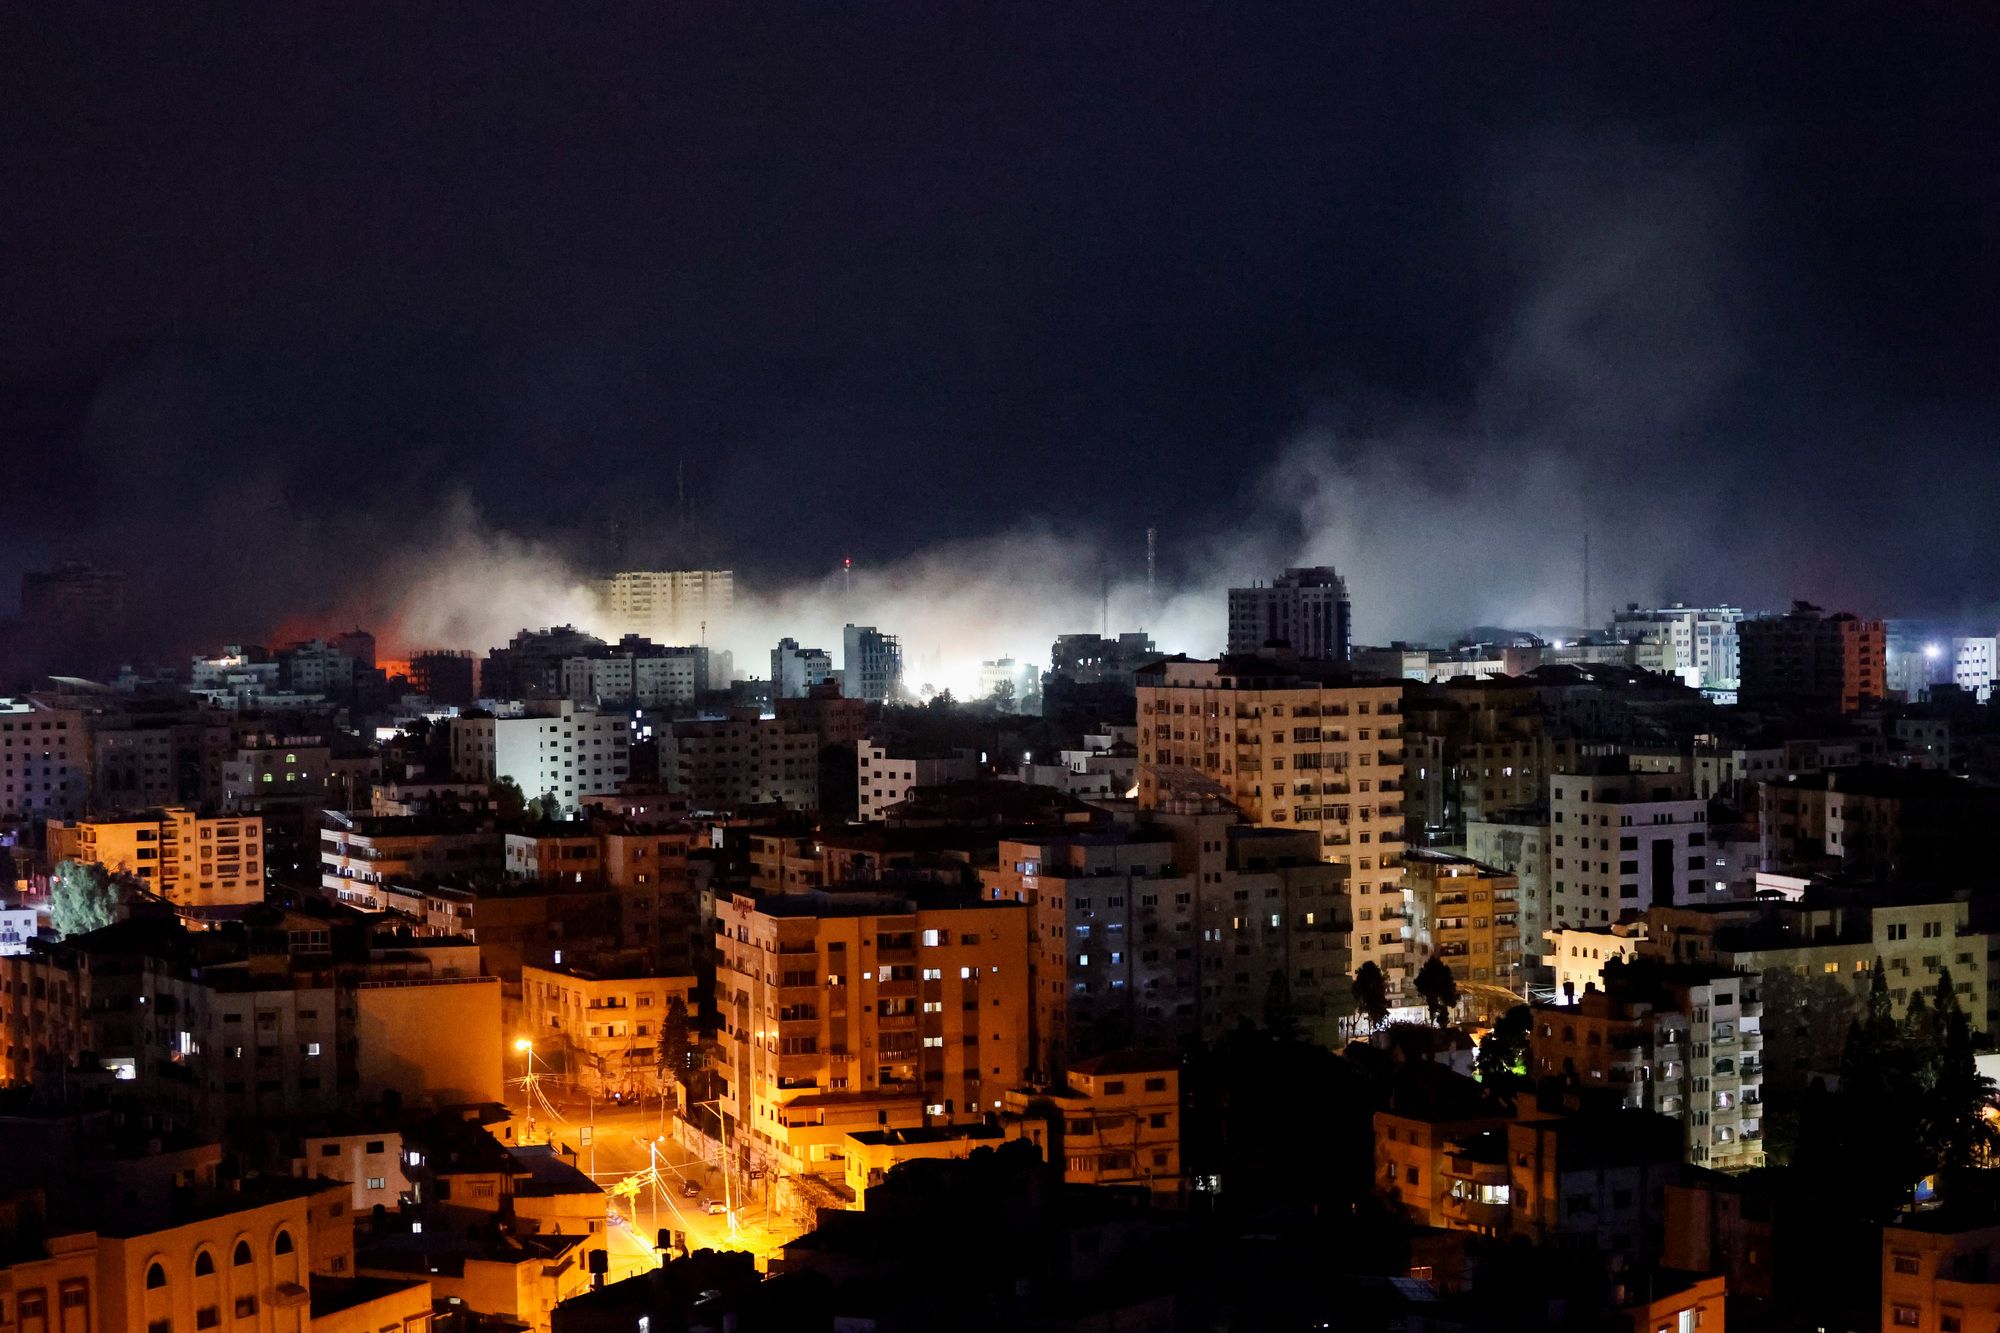 Die israelische Armee beginnt mit Angriffen auf Hamas-Terrorziele östlich von Rafah